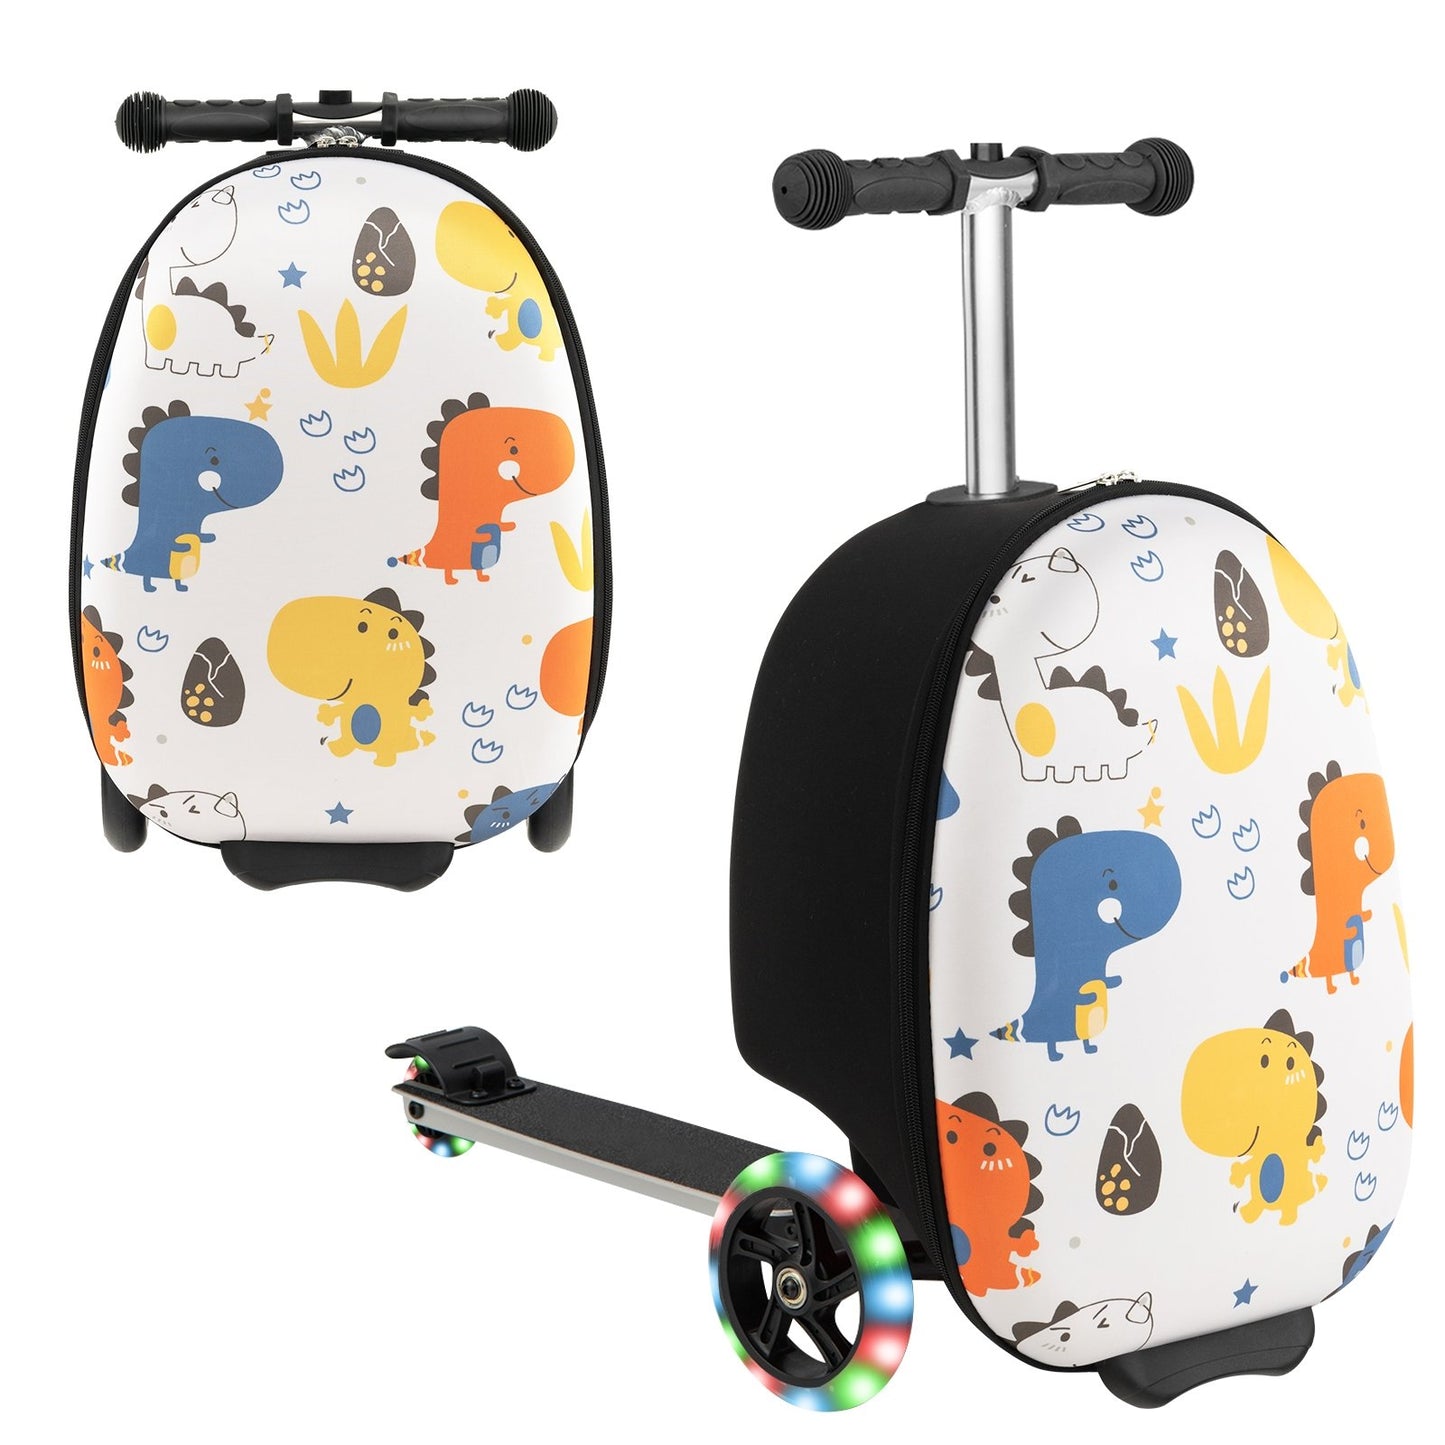 Hardshell Ride-on Suitcase Scooter with LED Flashing Wheels, Black & White